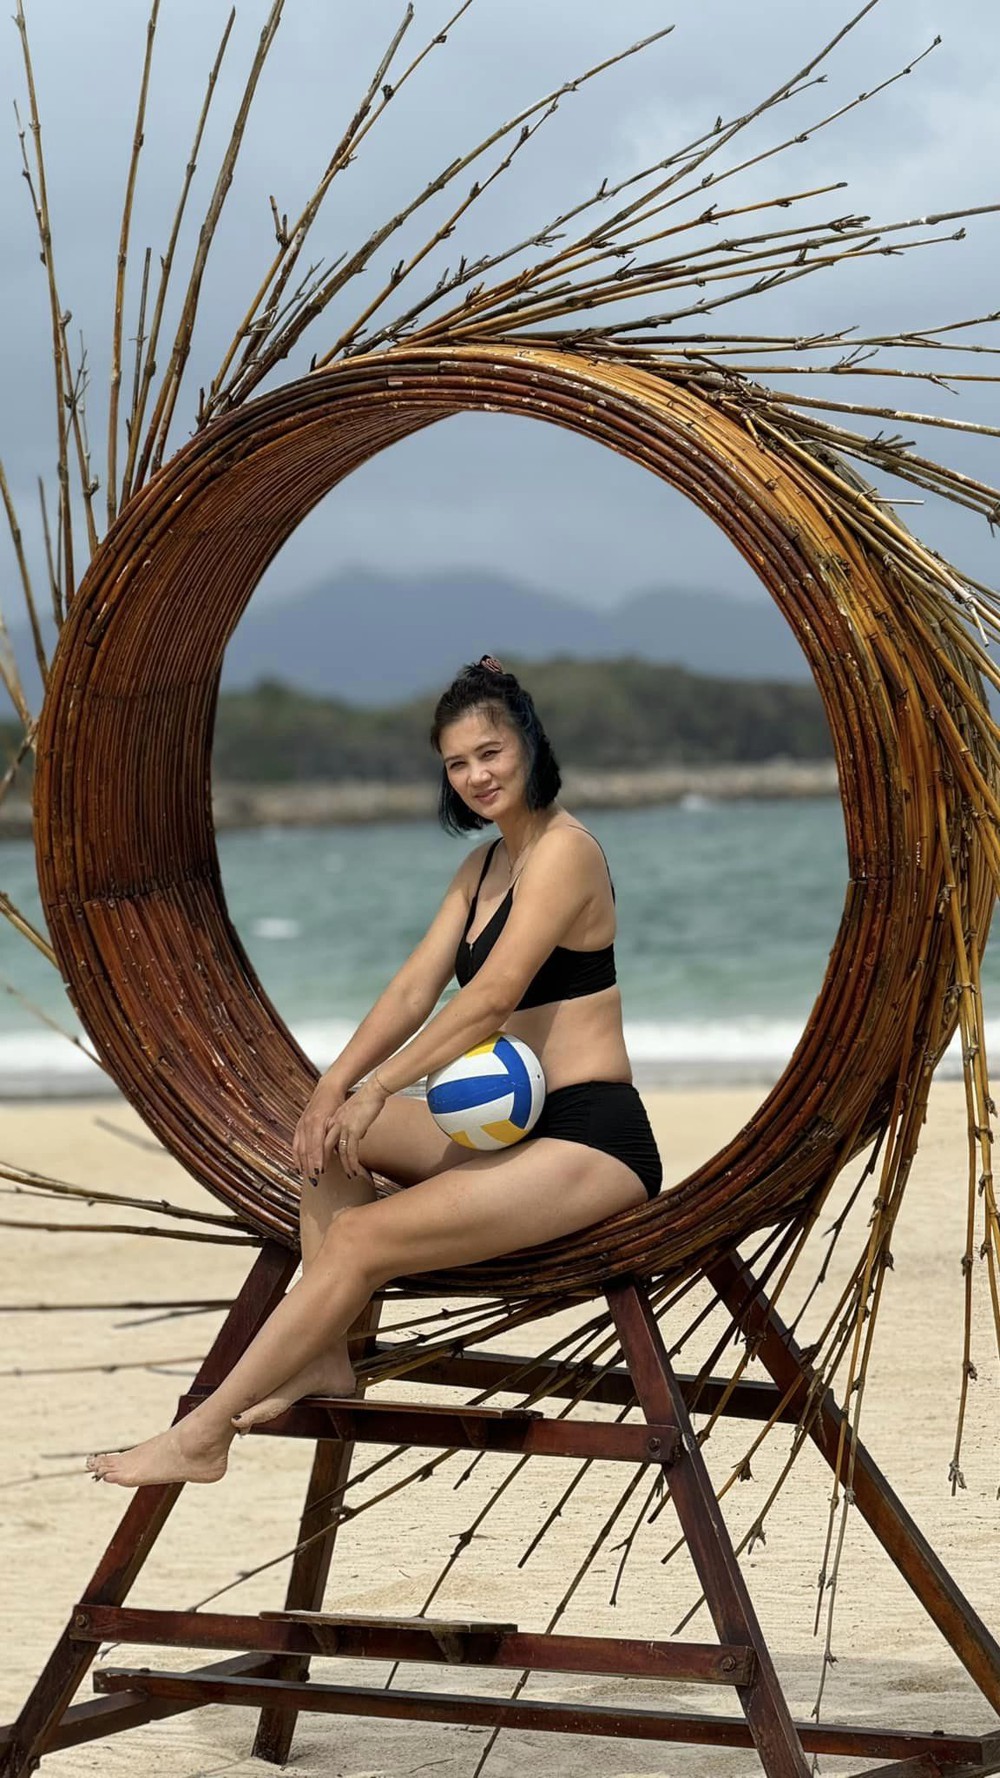 Hoa khôi bóng chuyền Kim Huệ: Diện bikini khoe sắc vóc U45, được khen đẹp quá - Ảnh 5.